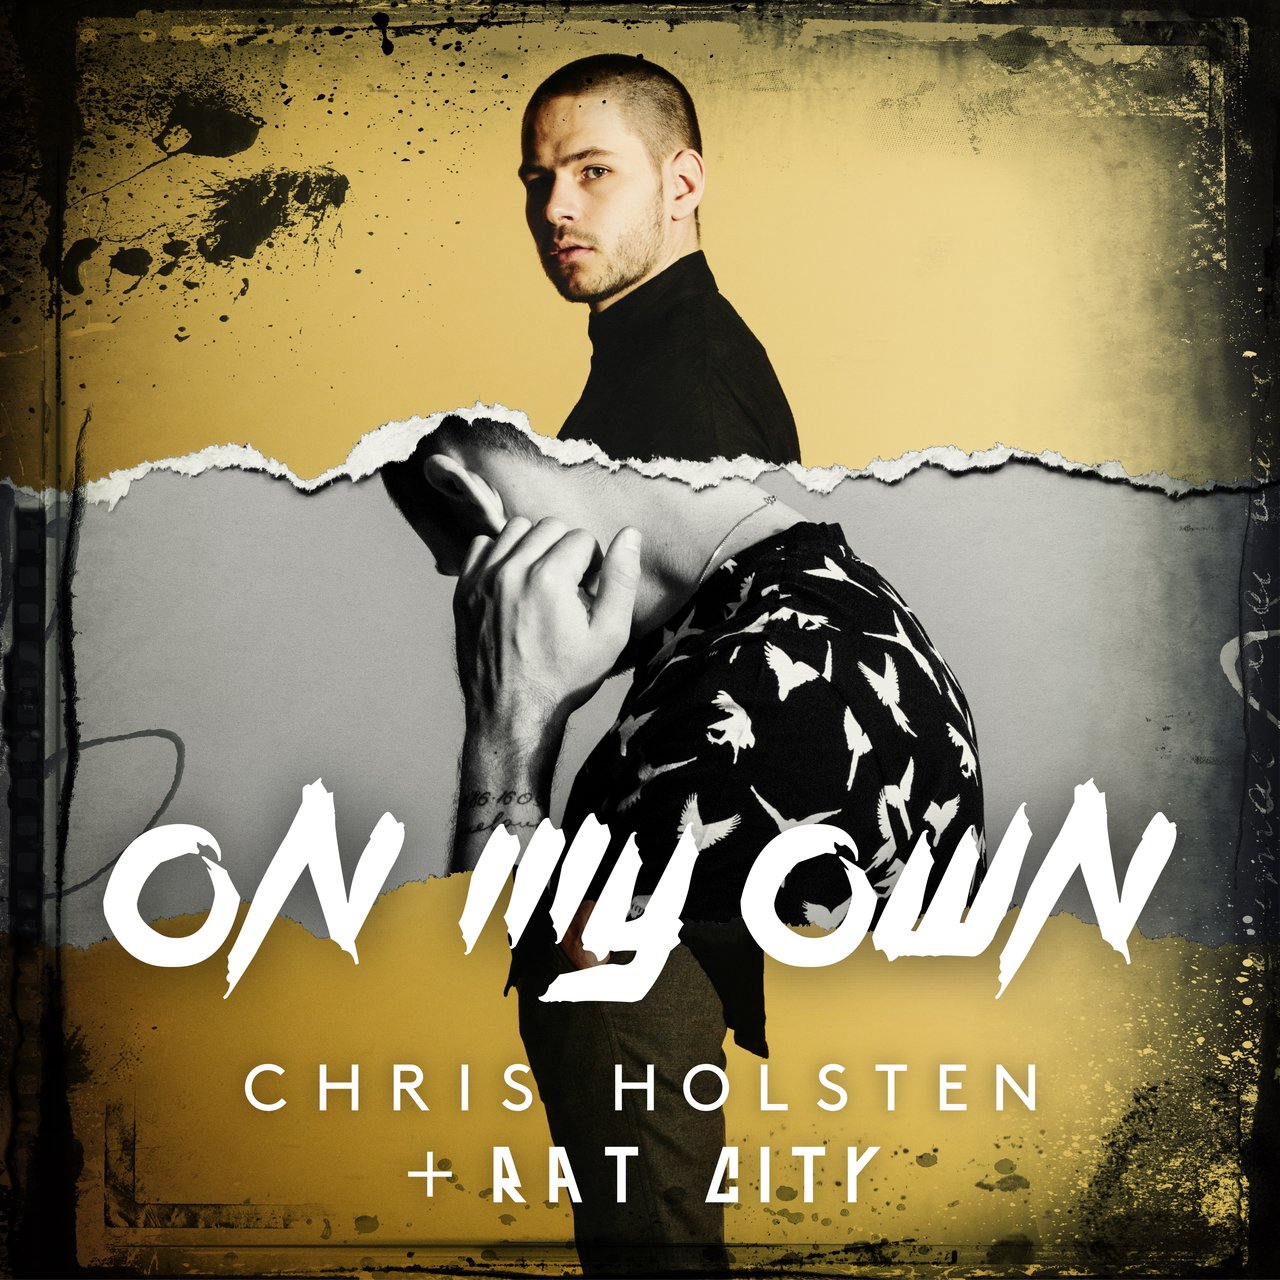 Chris Holsten & Rat City On My Own cover artwork